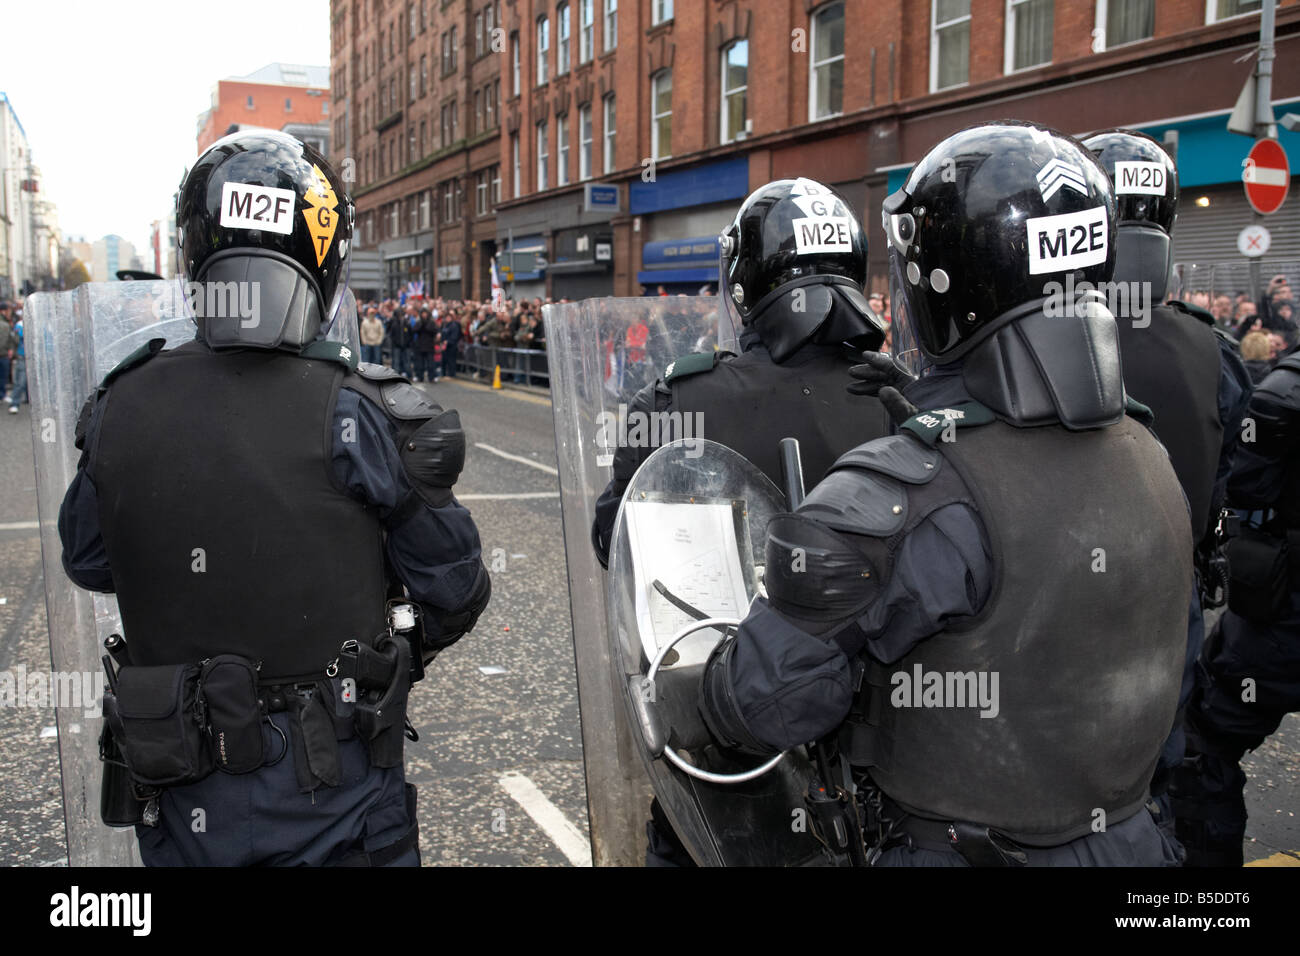 Service de police PSNI de l'Irlande du Nord, les agents de lutte antiémeute article Gardiennage pendant le défilé de protestation loyaliste belfast city 100 Banque D'Images